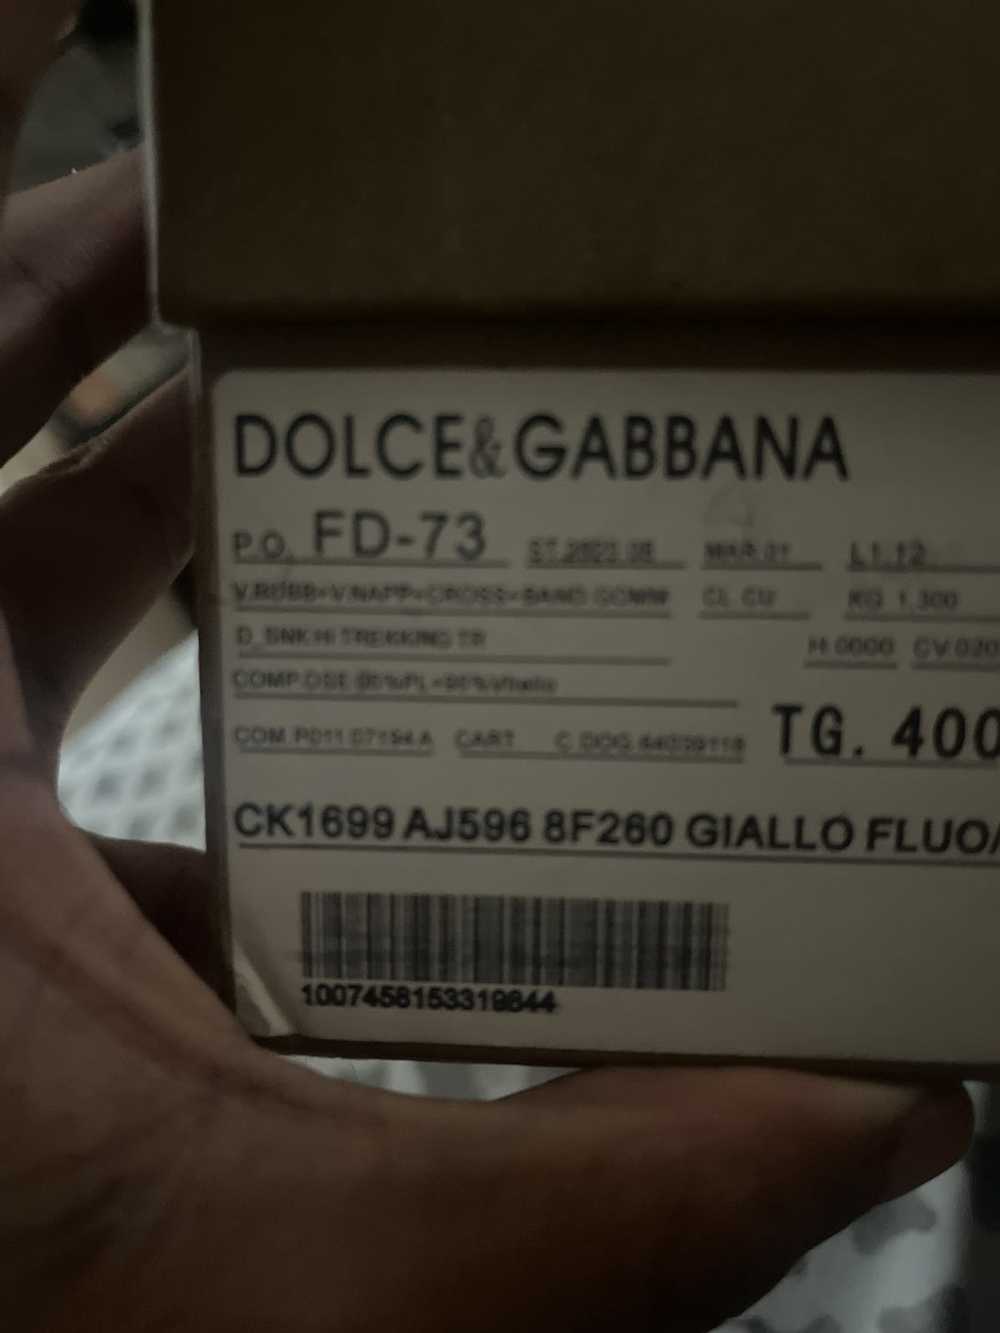 Dolce & Gabbana Dolce & gabbana - image 3